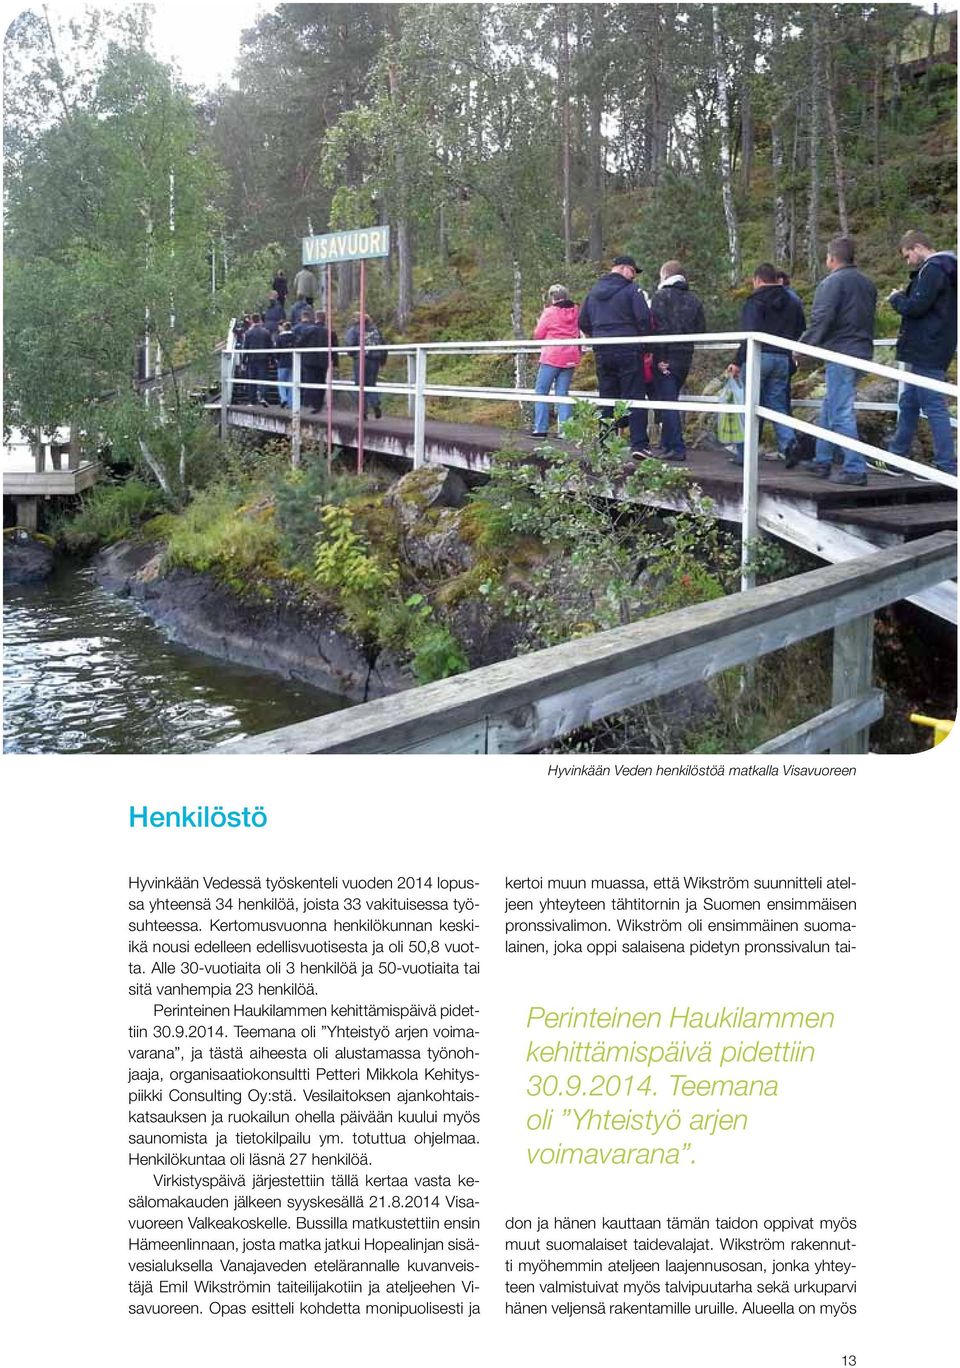 Perinteinen Haukilammen kehittämispäivä pidettiin 30.9.2014.